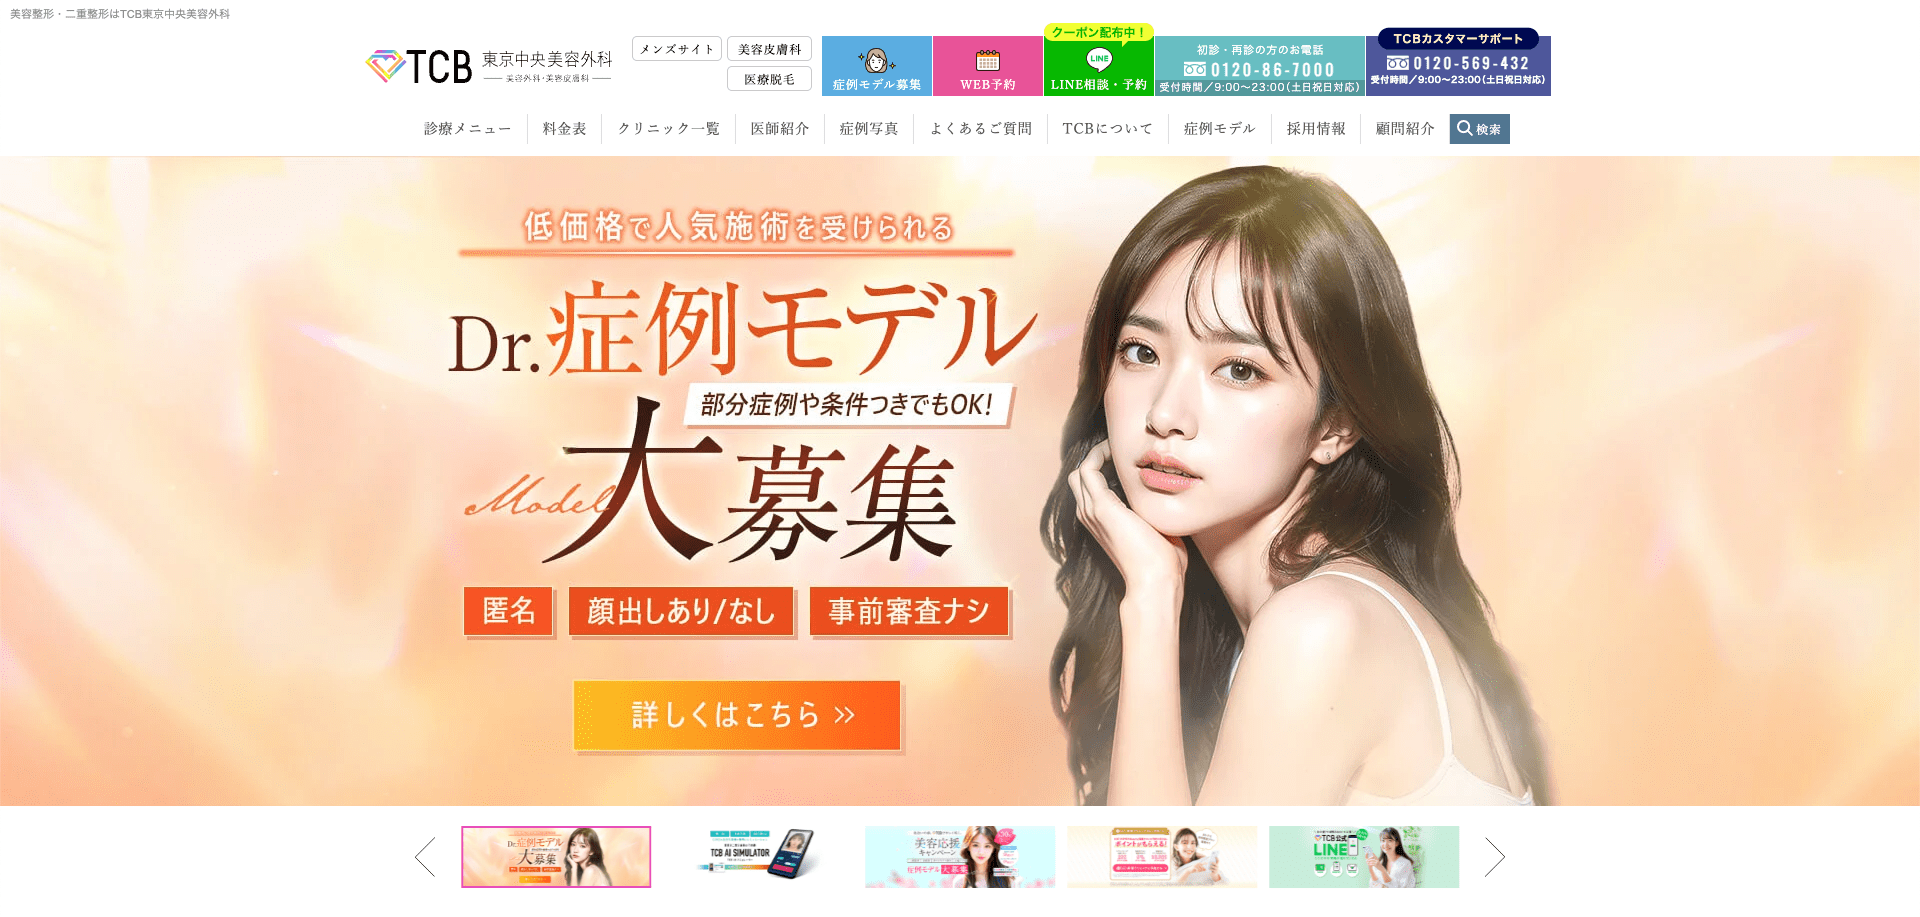 TCB東京中央美容外科 公式サイト